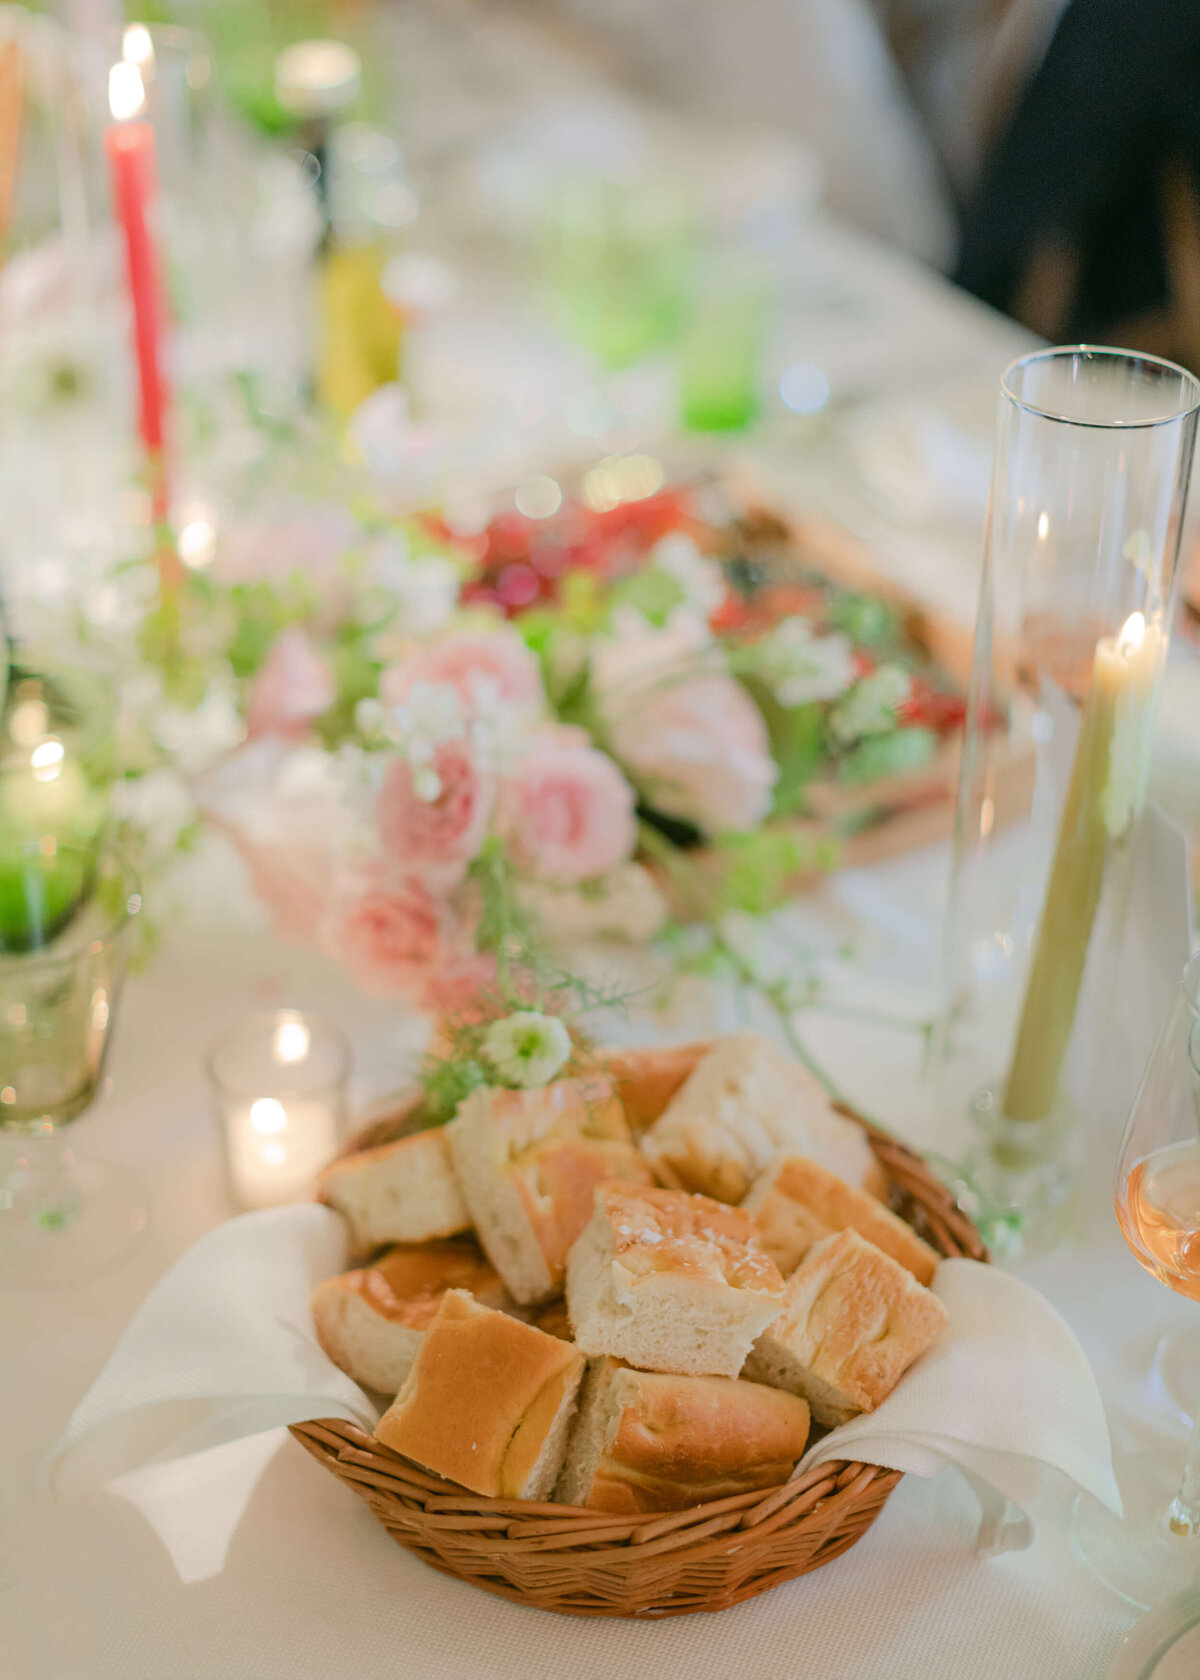 chloe-winstanley-weddings-tablescape-bread